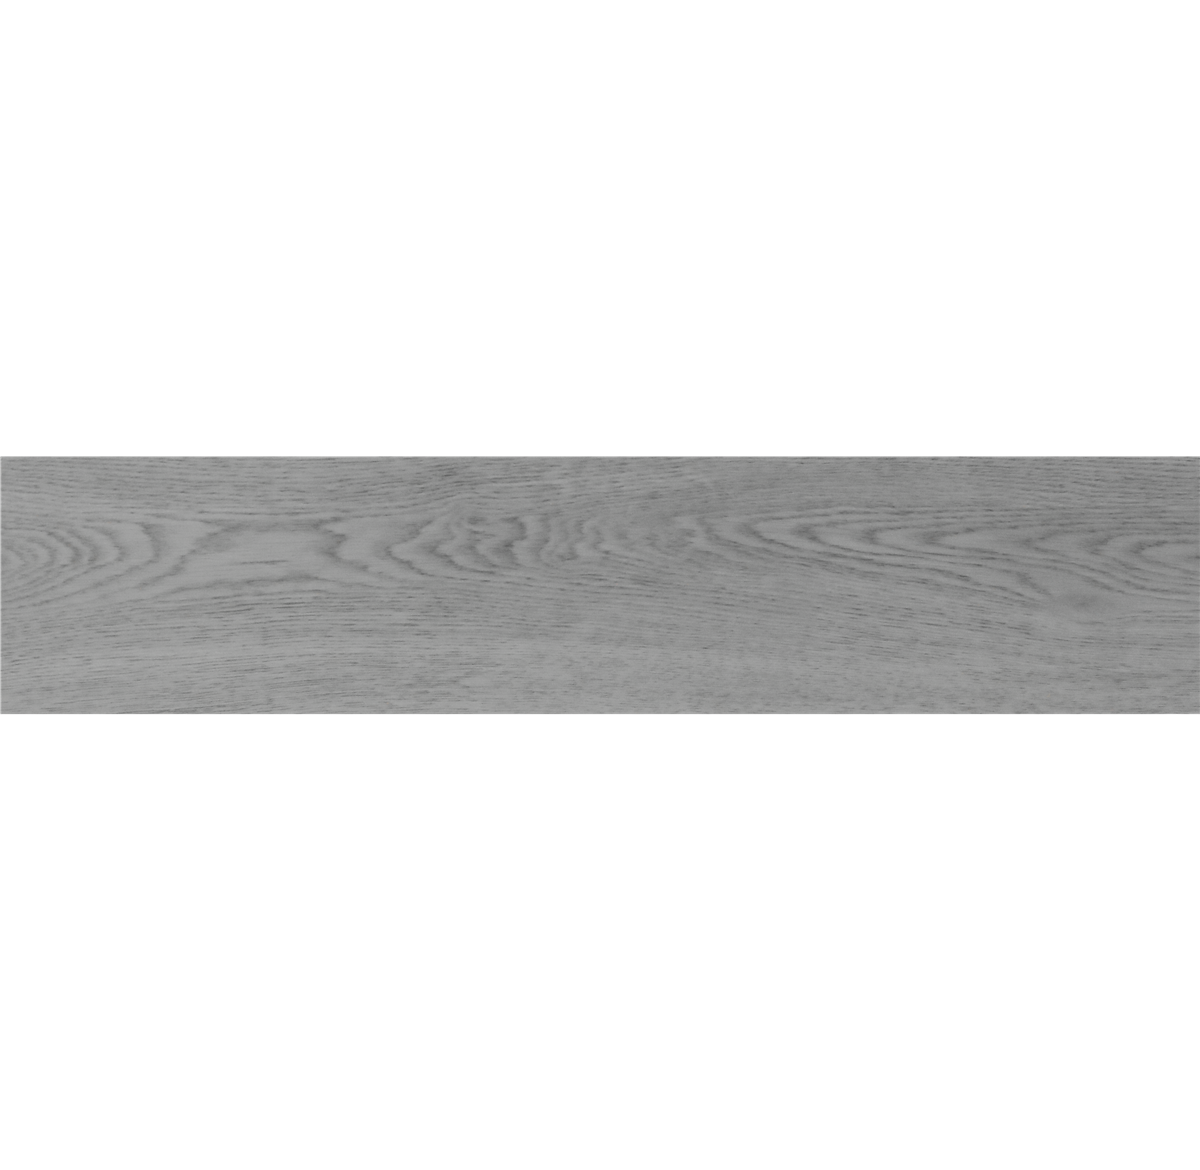 Durable factory direct supply wear resistant SPC vinyl floor